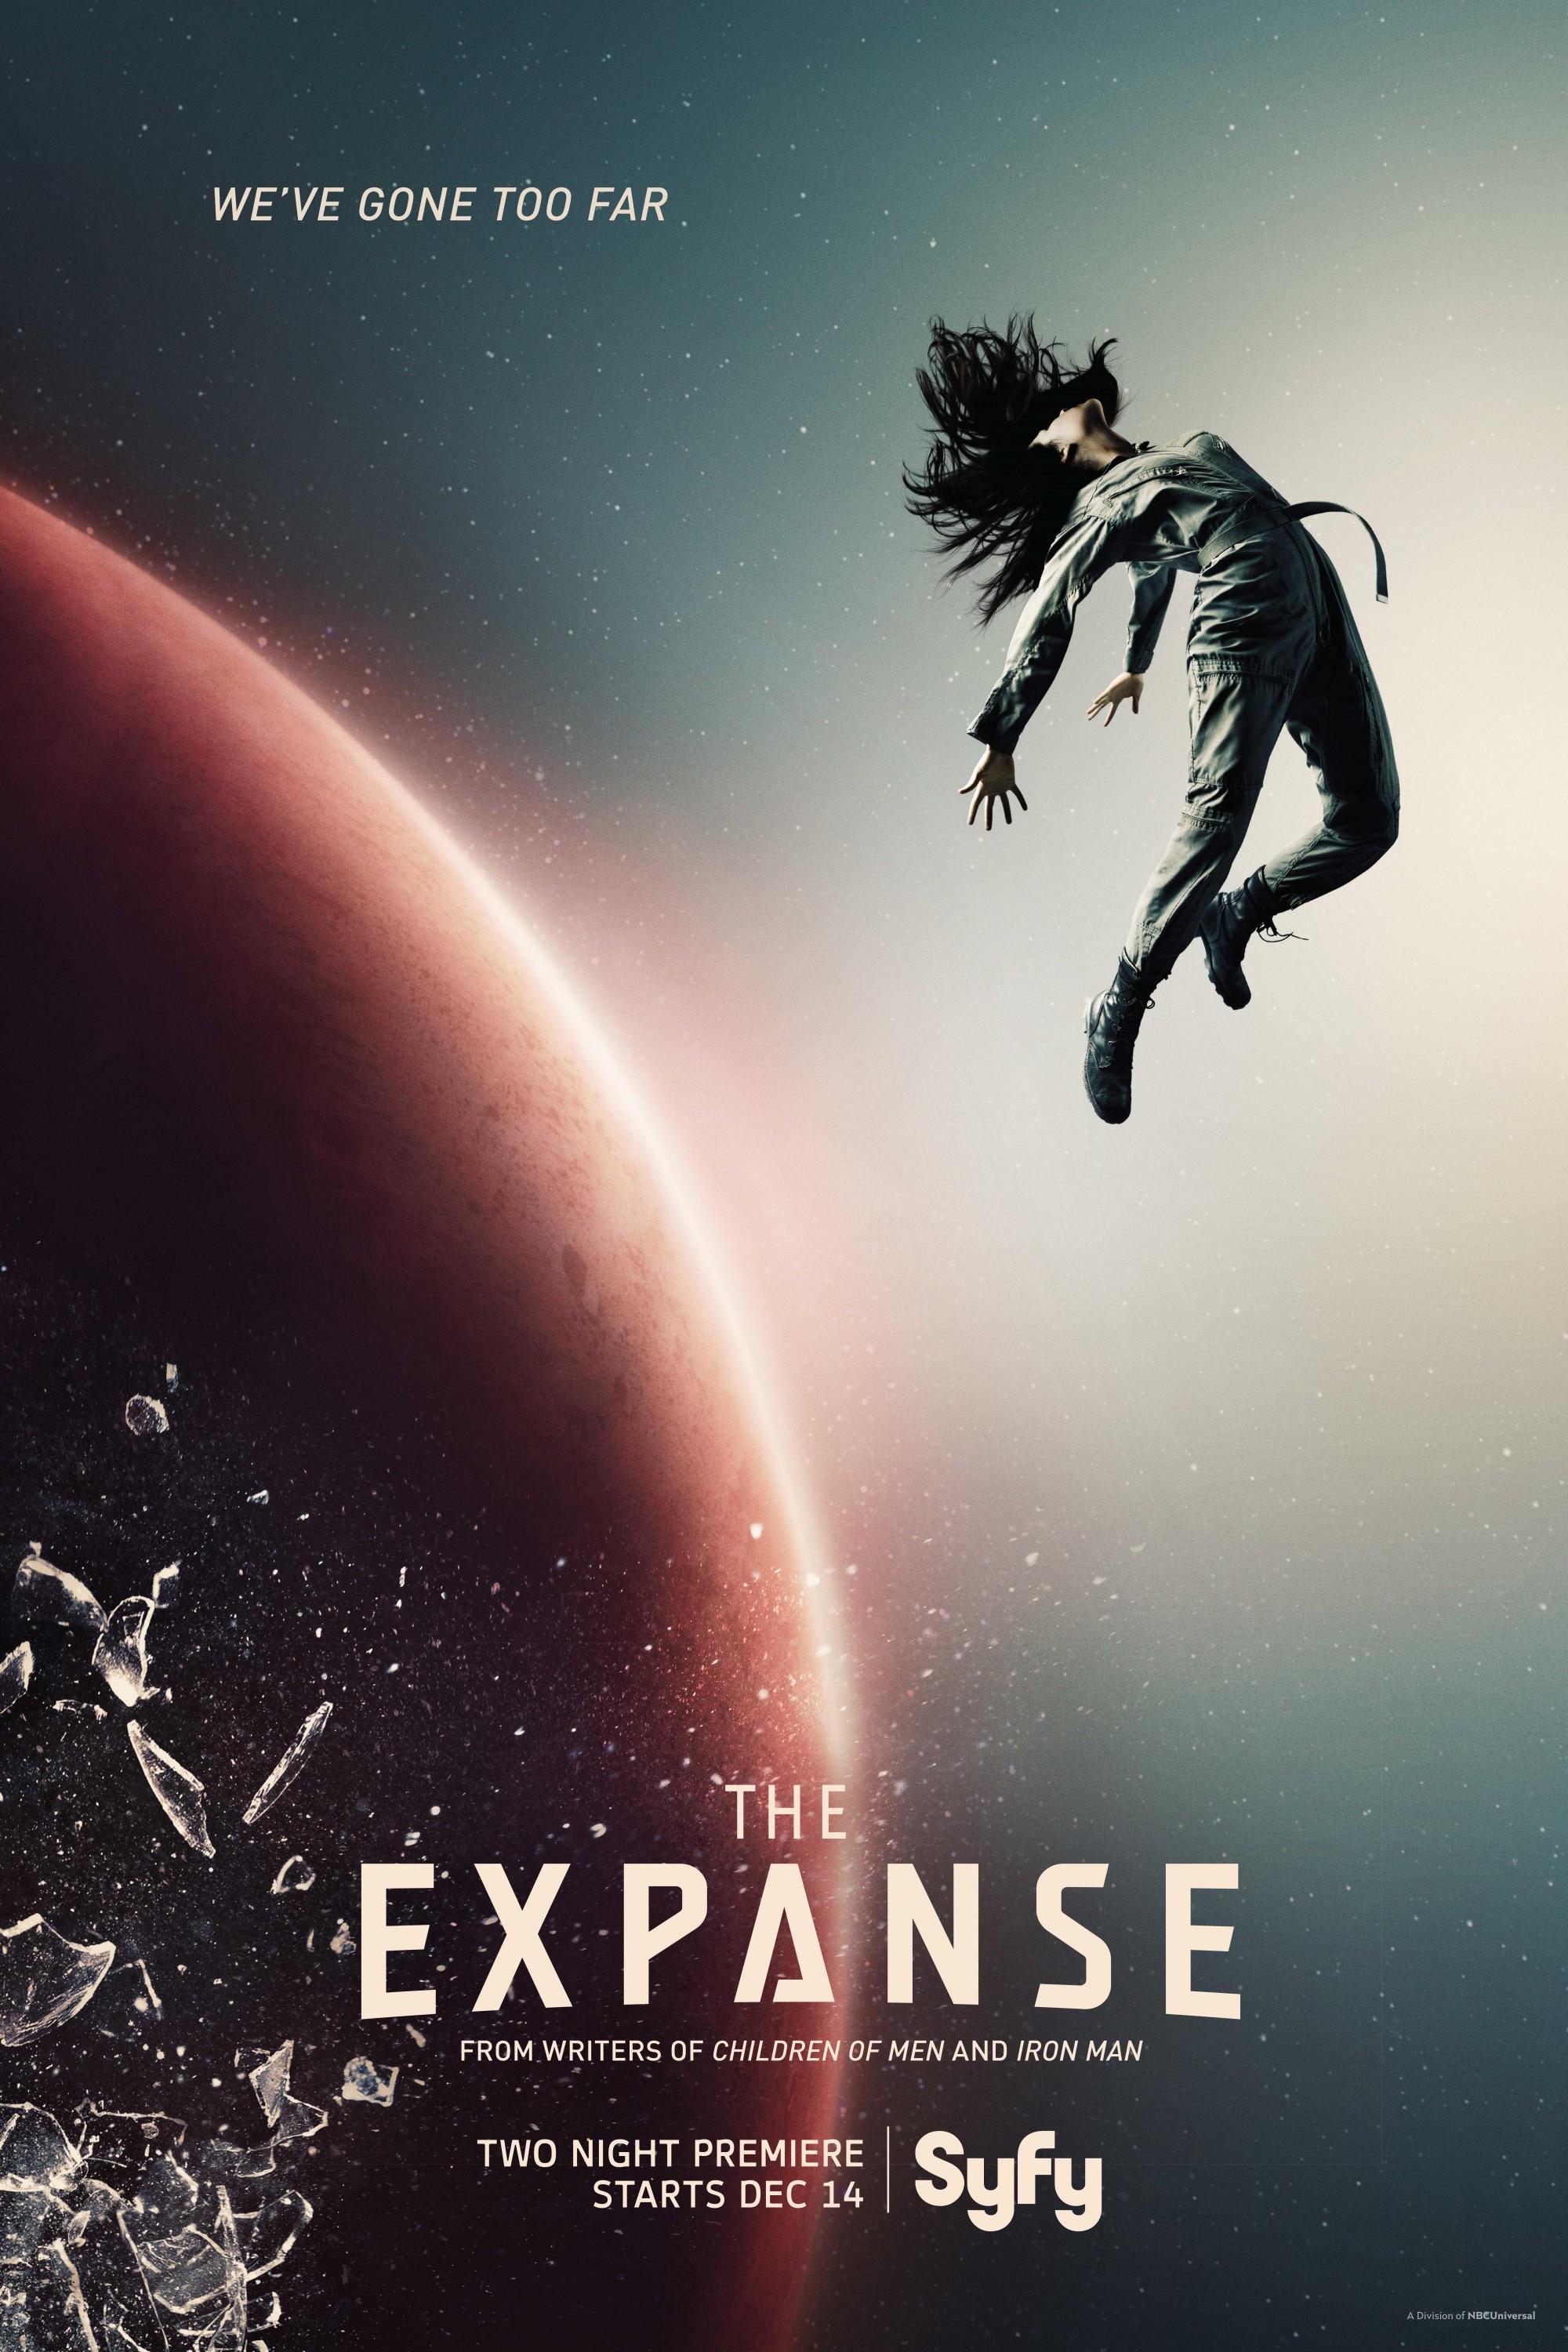  无垠的太空第一季海报，导演: 罗伯特·里伯曼 / 泰瑞·麦克多诺。 